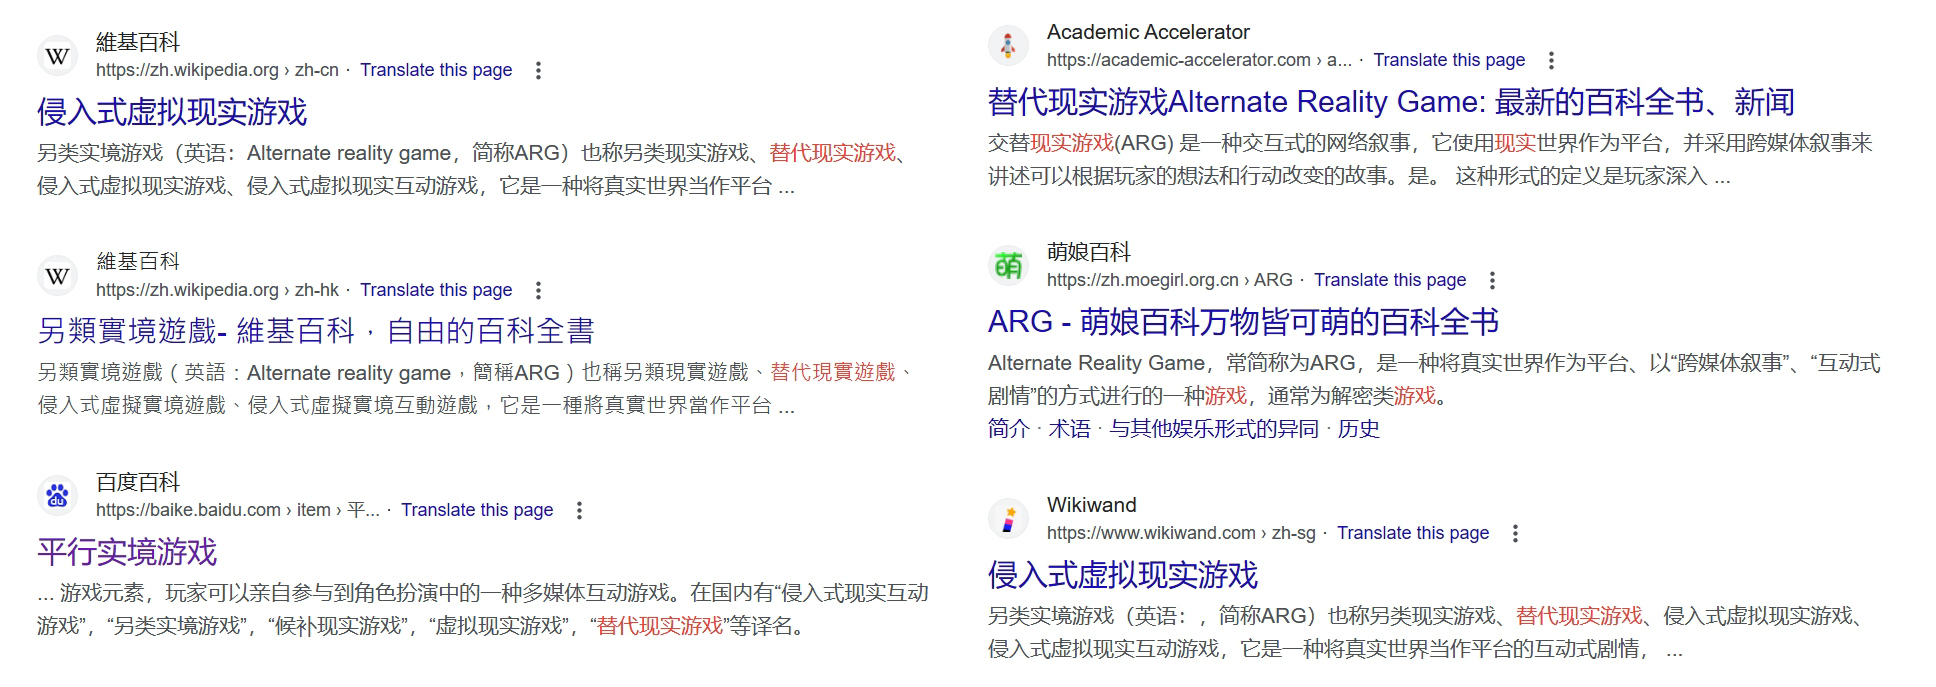 当你试图用中文搜索ARG